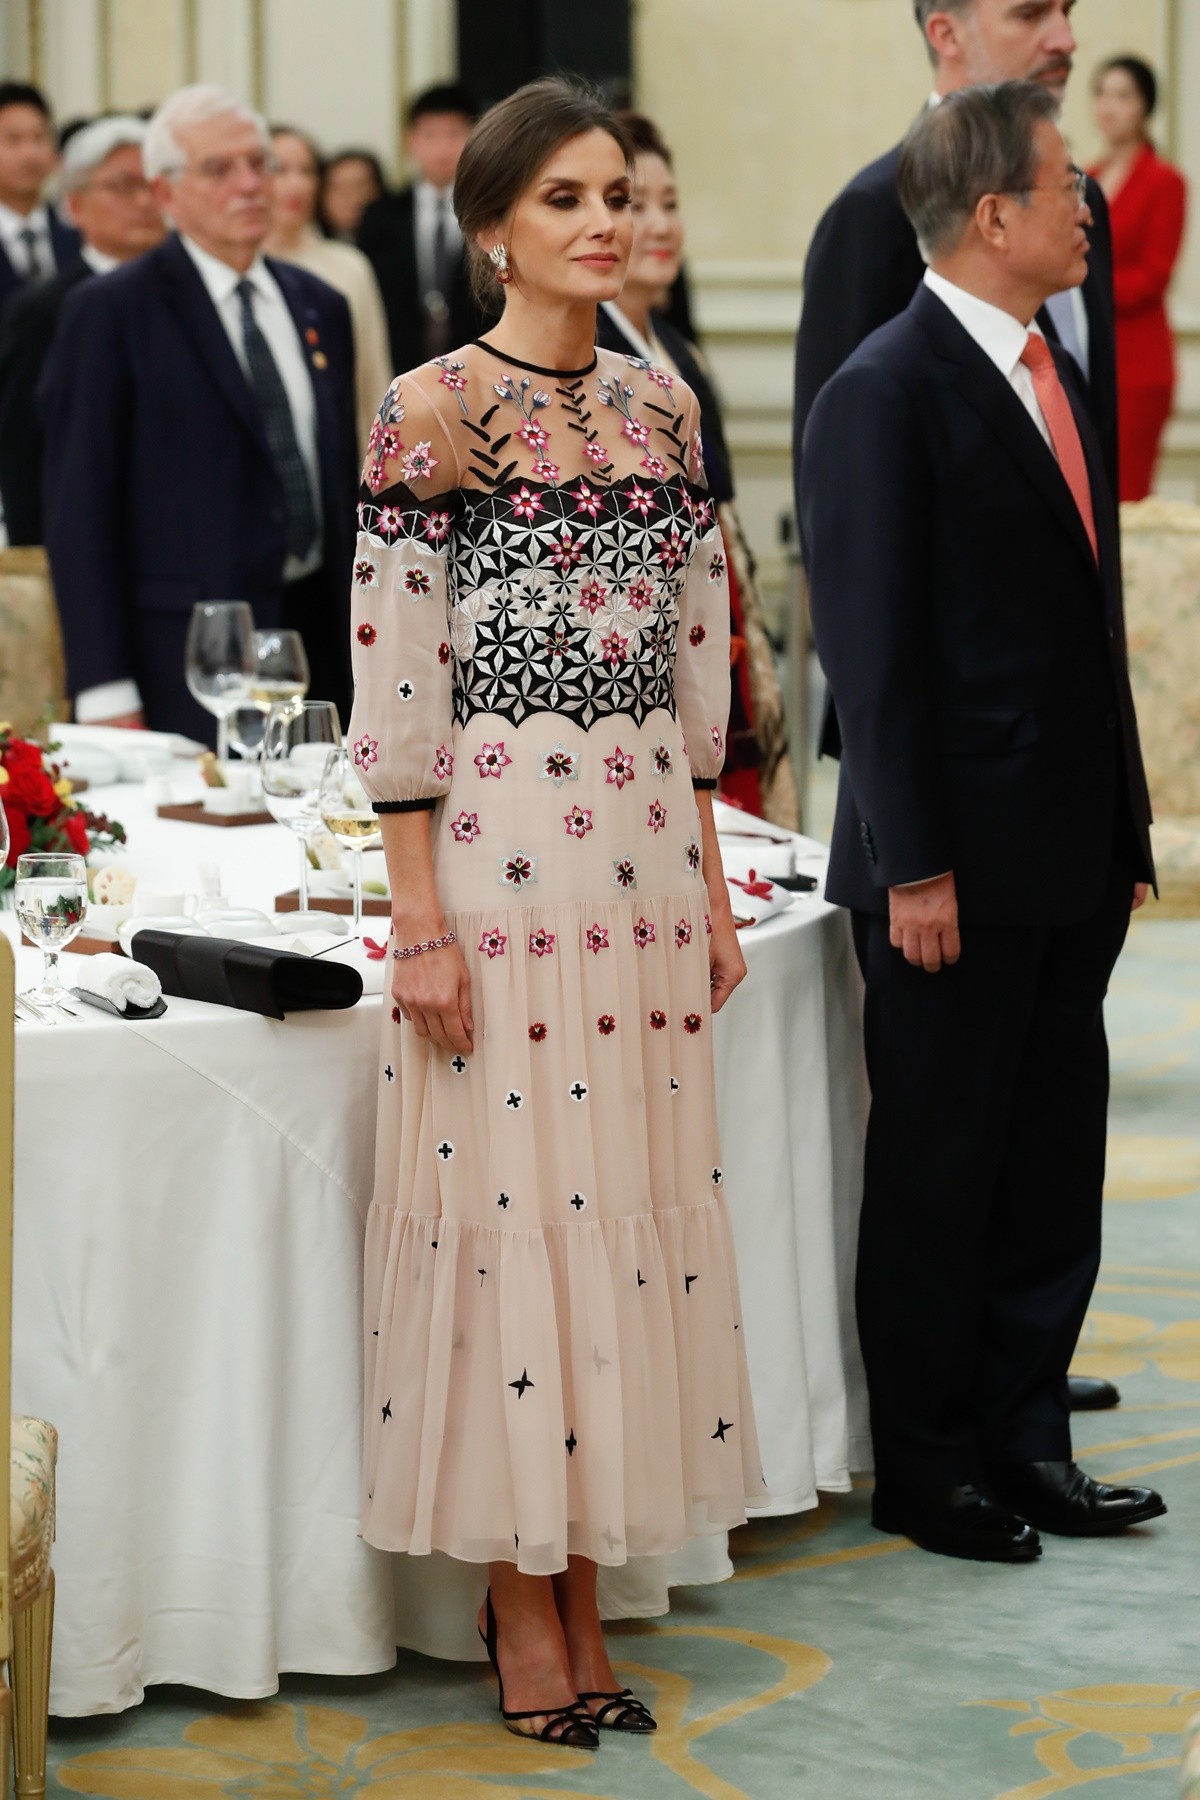 La reina elige un vestido romántico de Temperley London en la cena de gala de Corea